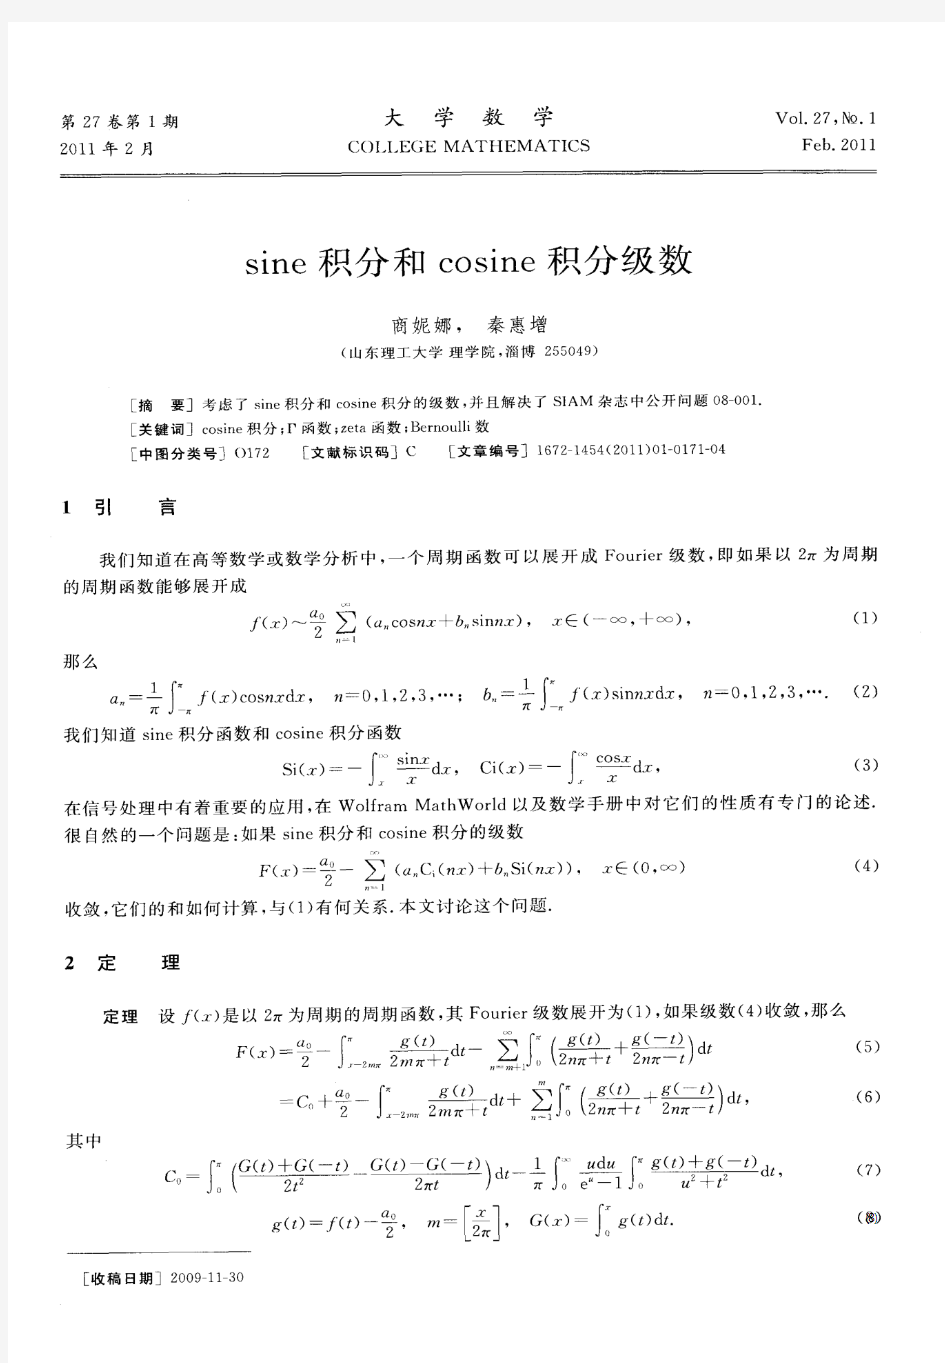 sine积分和cosine积分级数